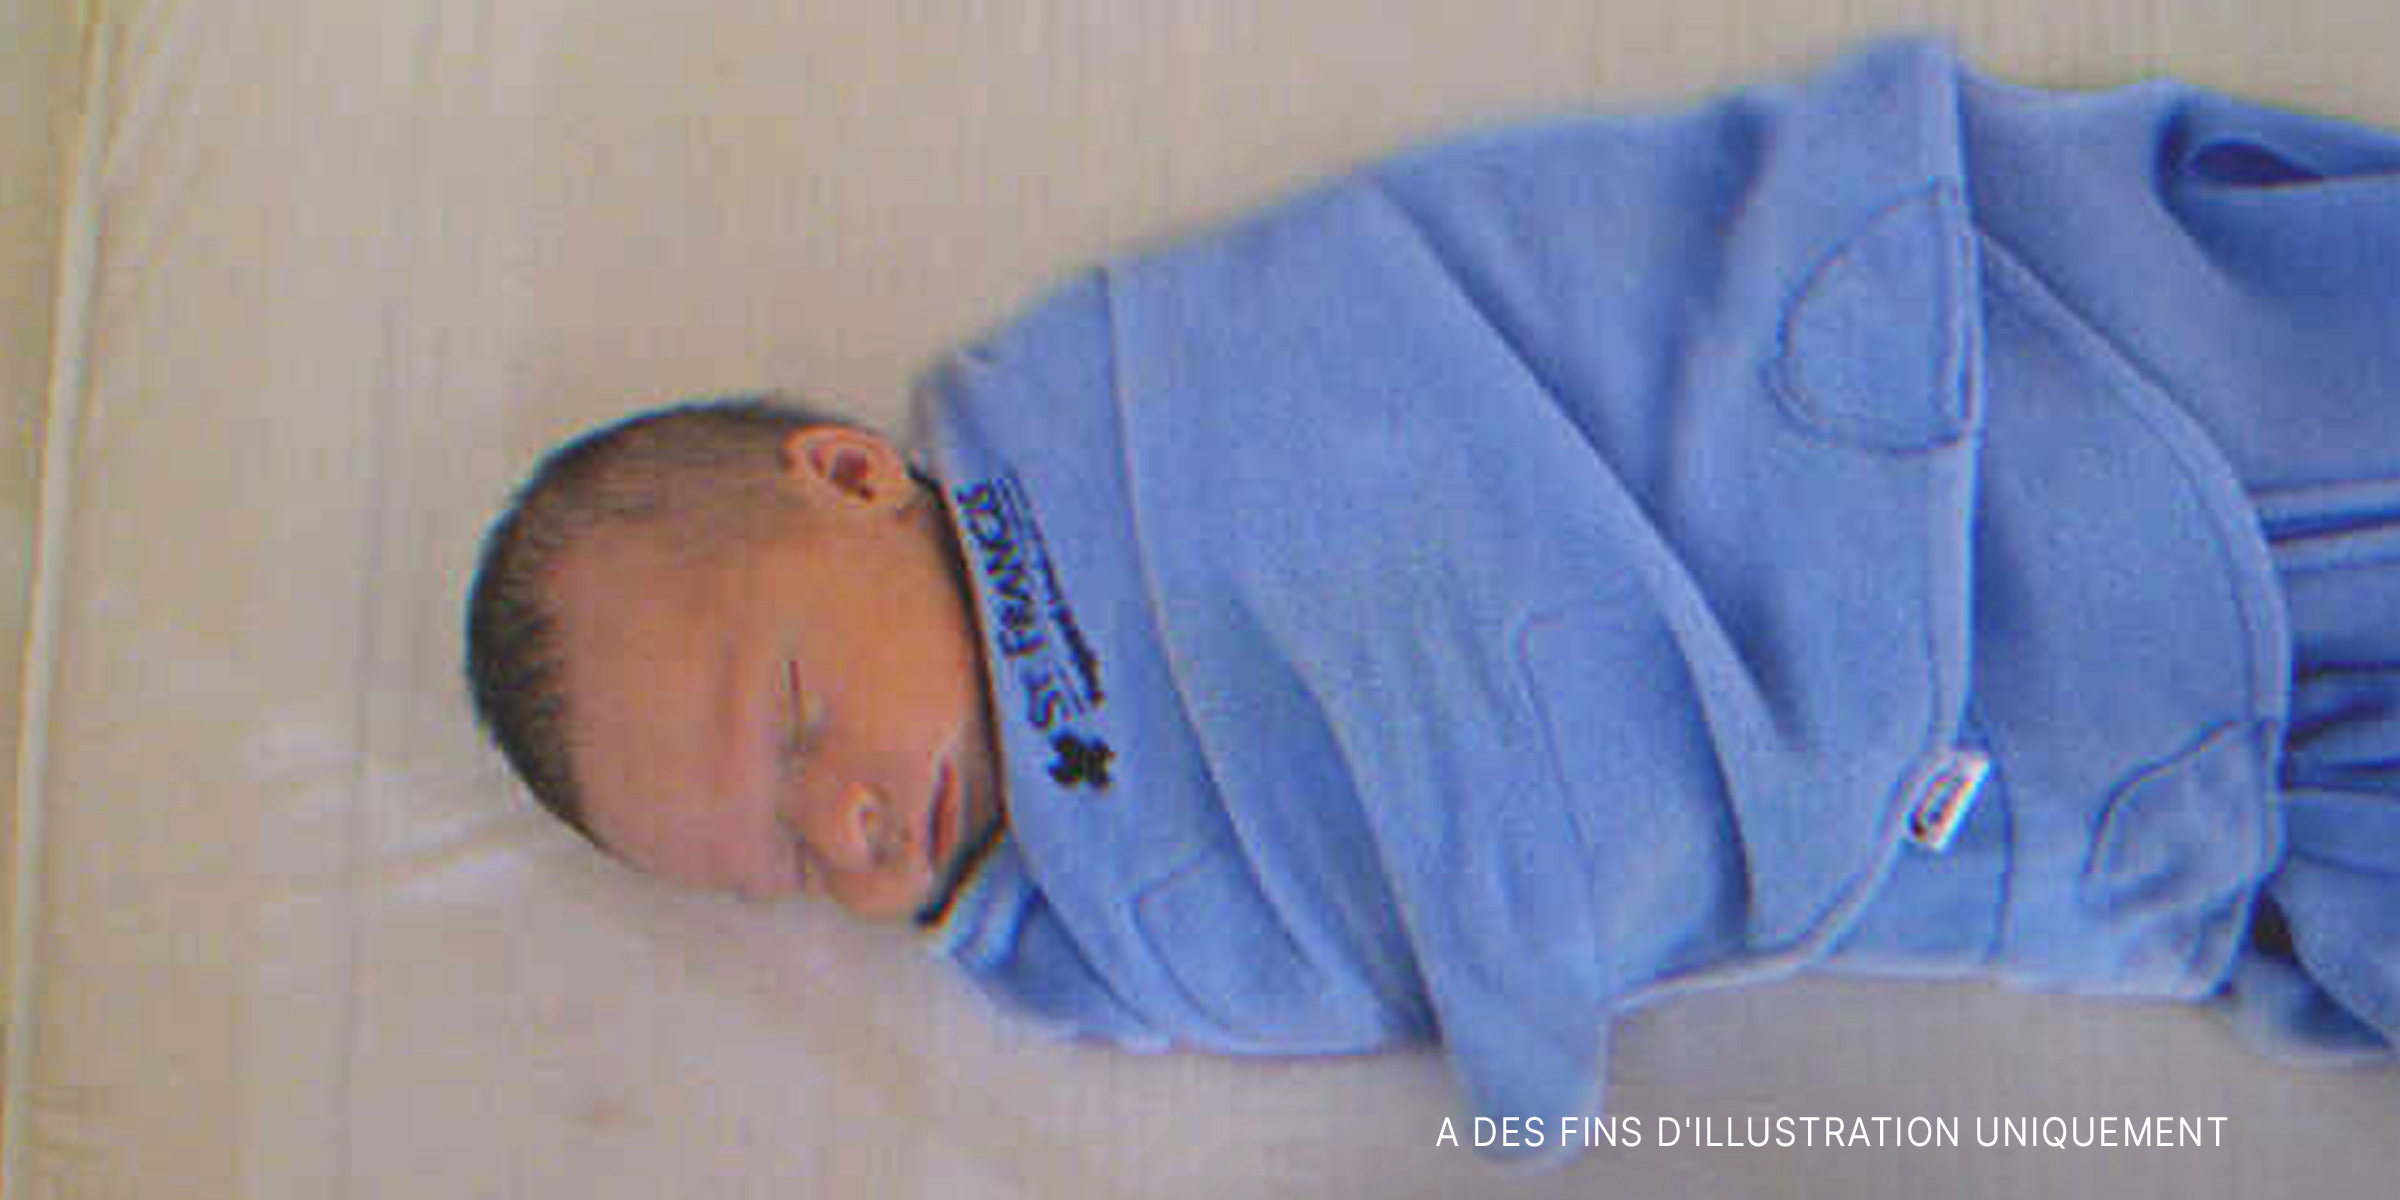 Un bébé enveloppé dans un tissu bleu | Source : Flickr/EtanSivad (CC BY-SA 2.0)